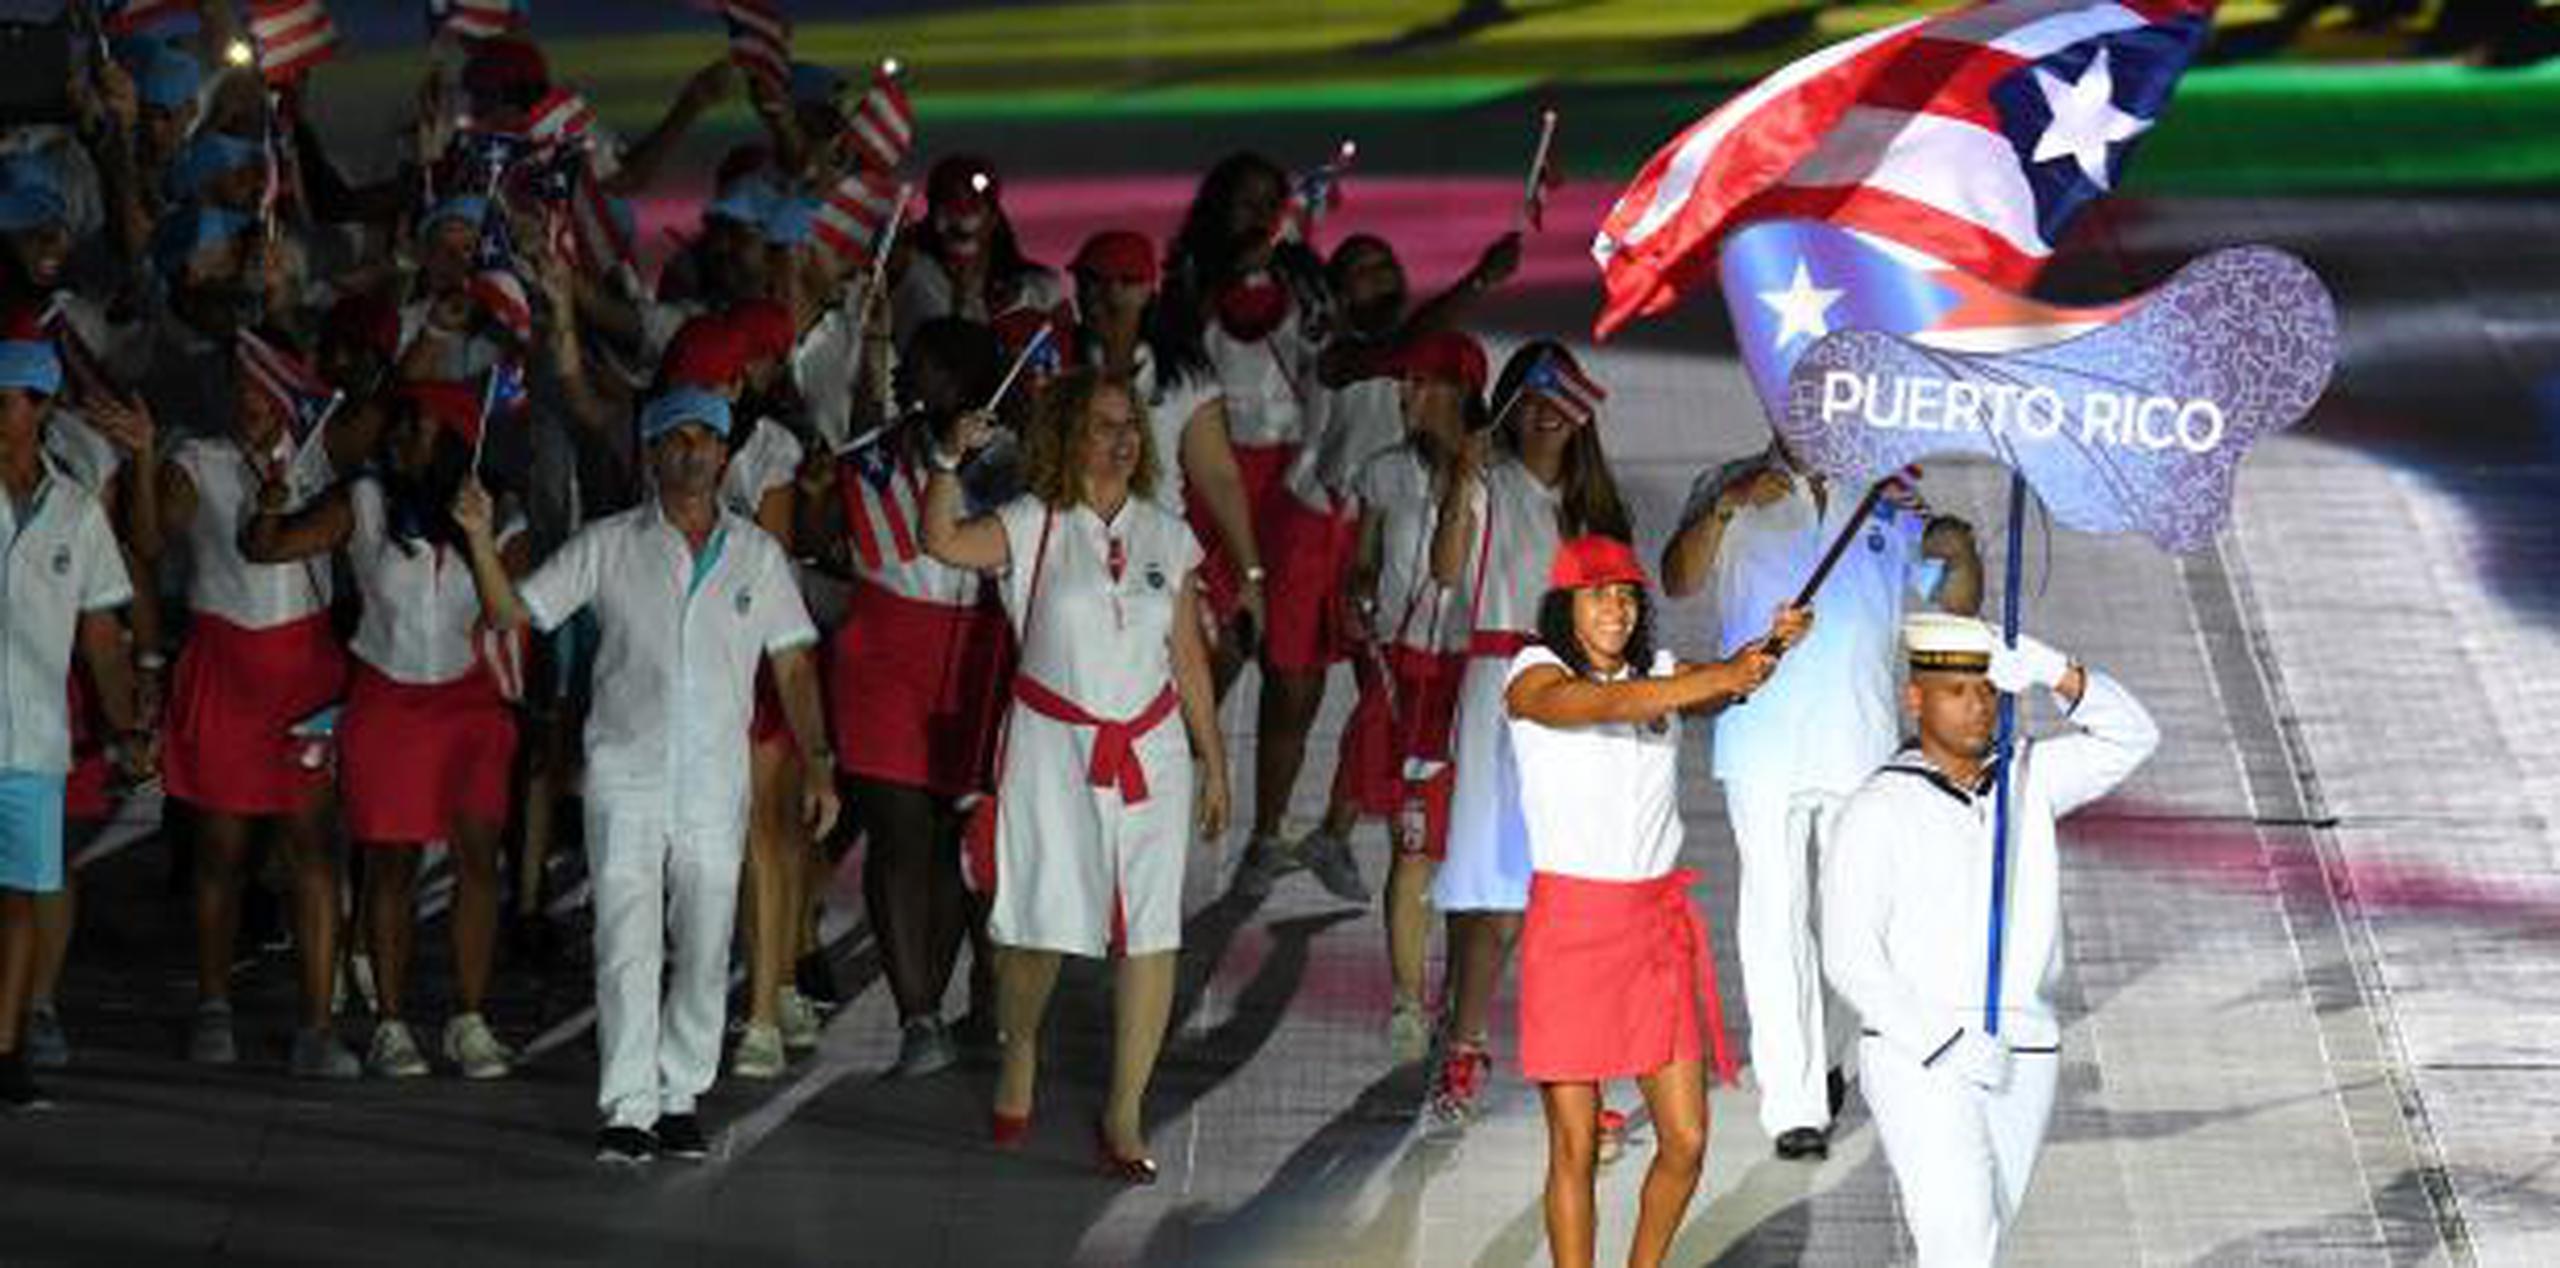 La presidenta del Comité Olímpico, Sara Rosario, considera que los recortes de becas deportivas en la UPR perjudicarán verticalmente las delegaciones de Puerto Rico que competirán en los Panamericanos Lima 2019 y las Olimpiadas Tokio 2020. (Archivo)